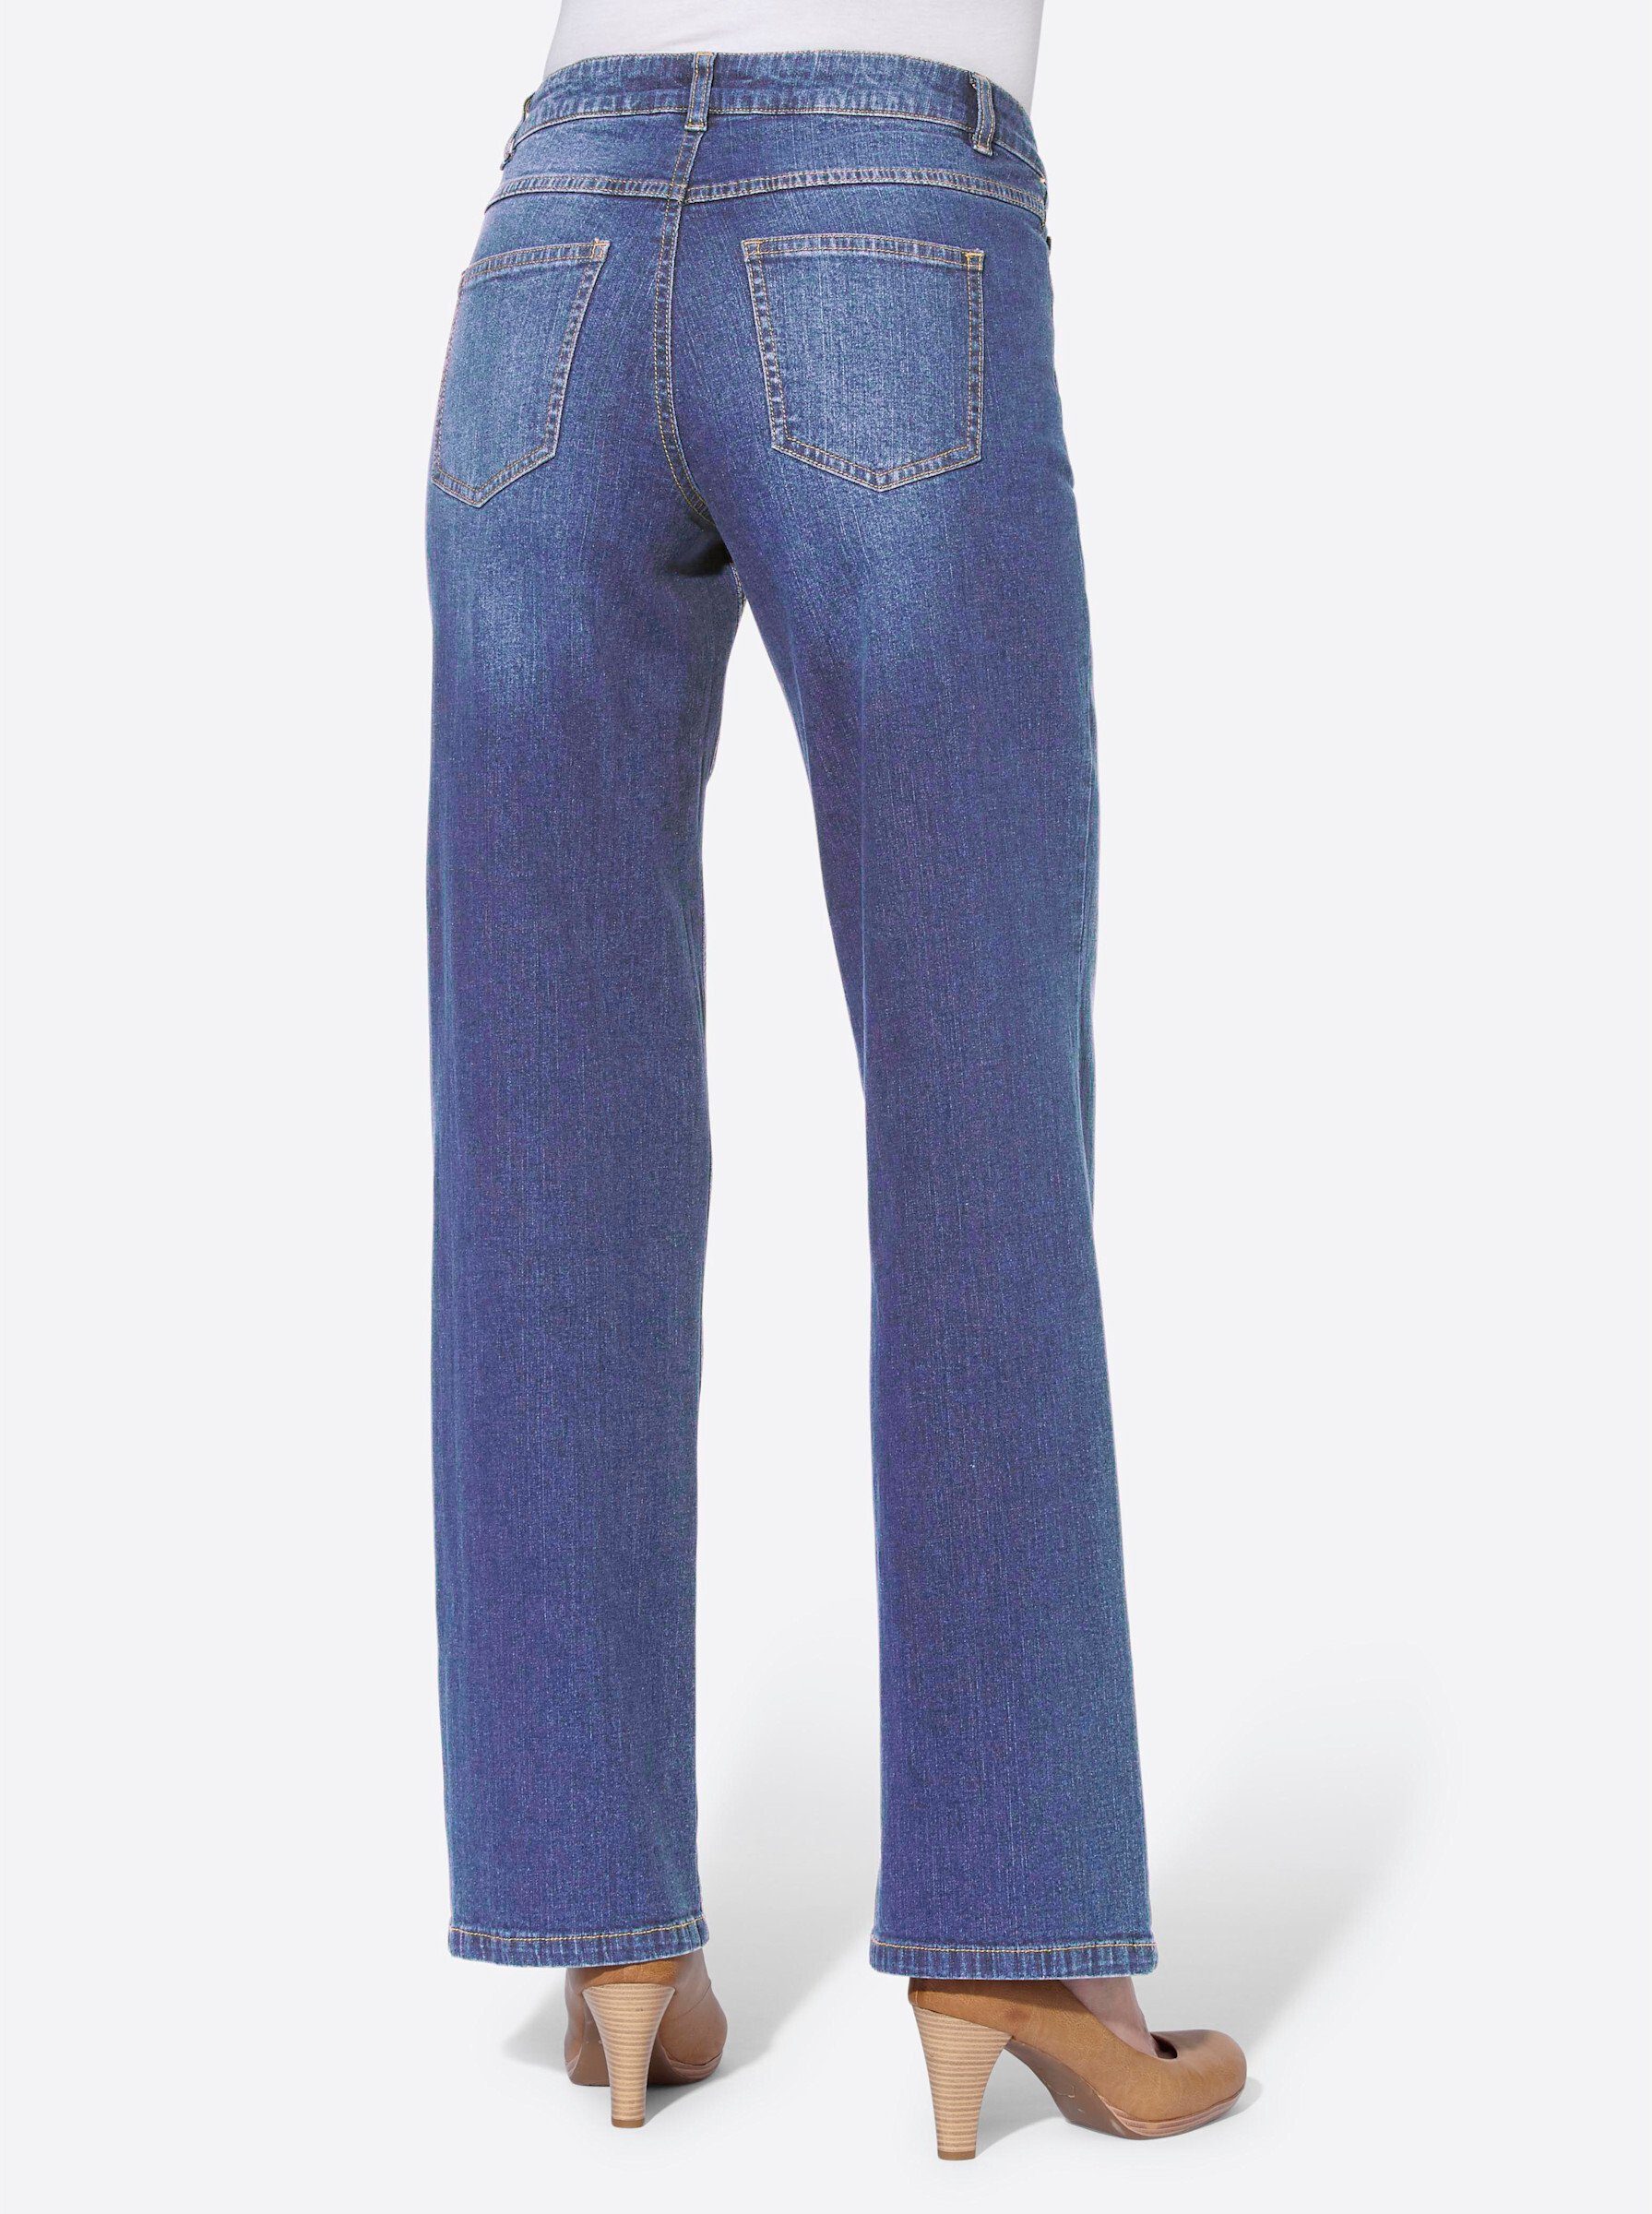 WITT WEIDEN Bequeme Jeans blue dark